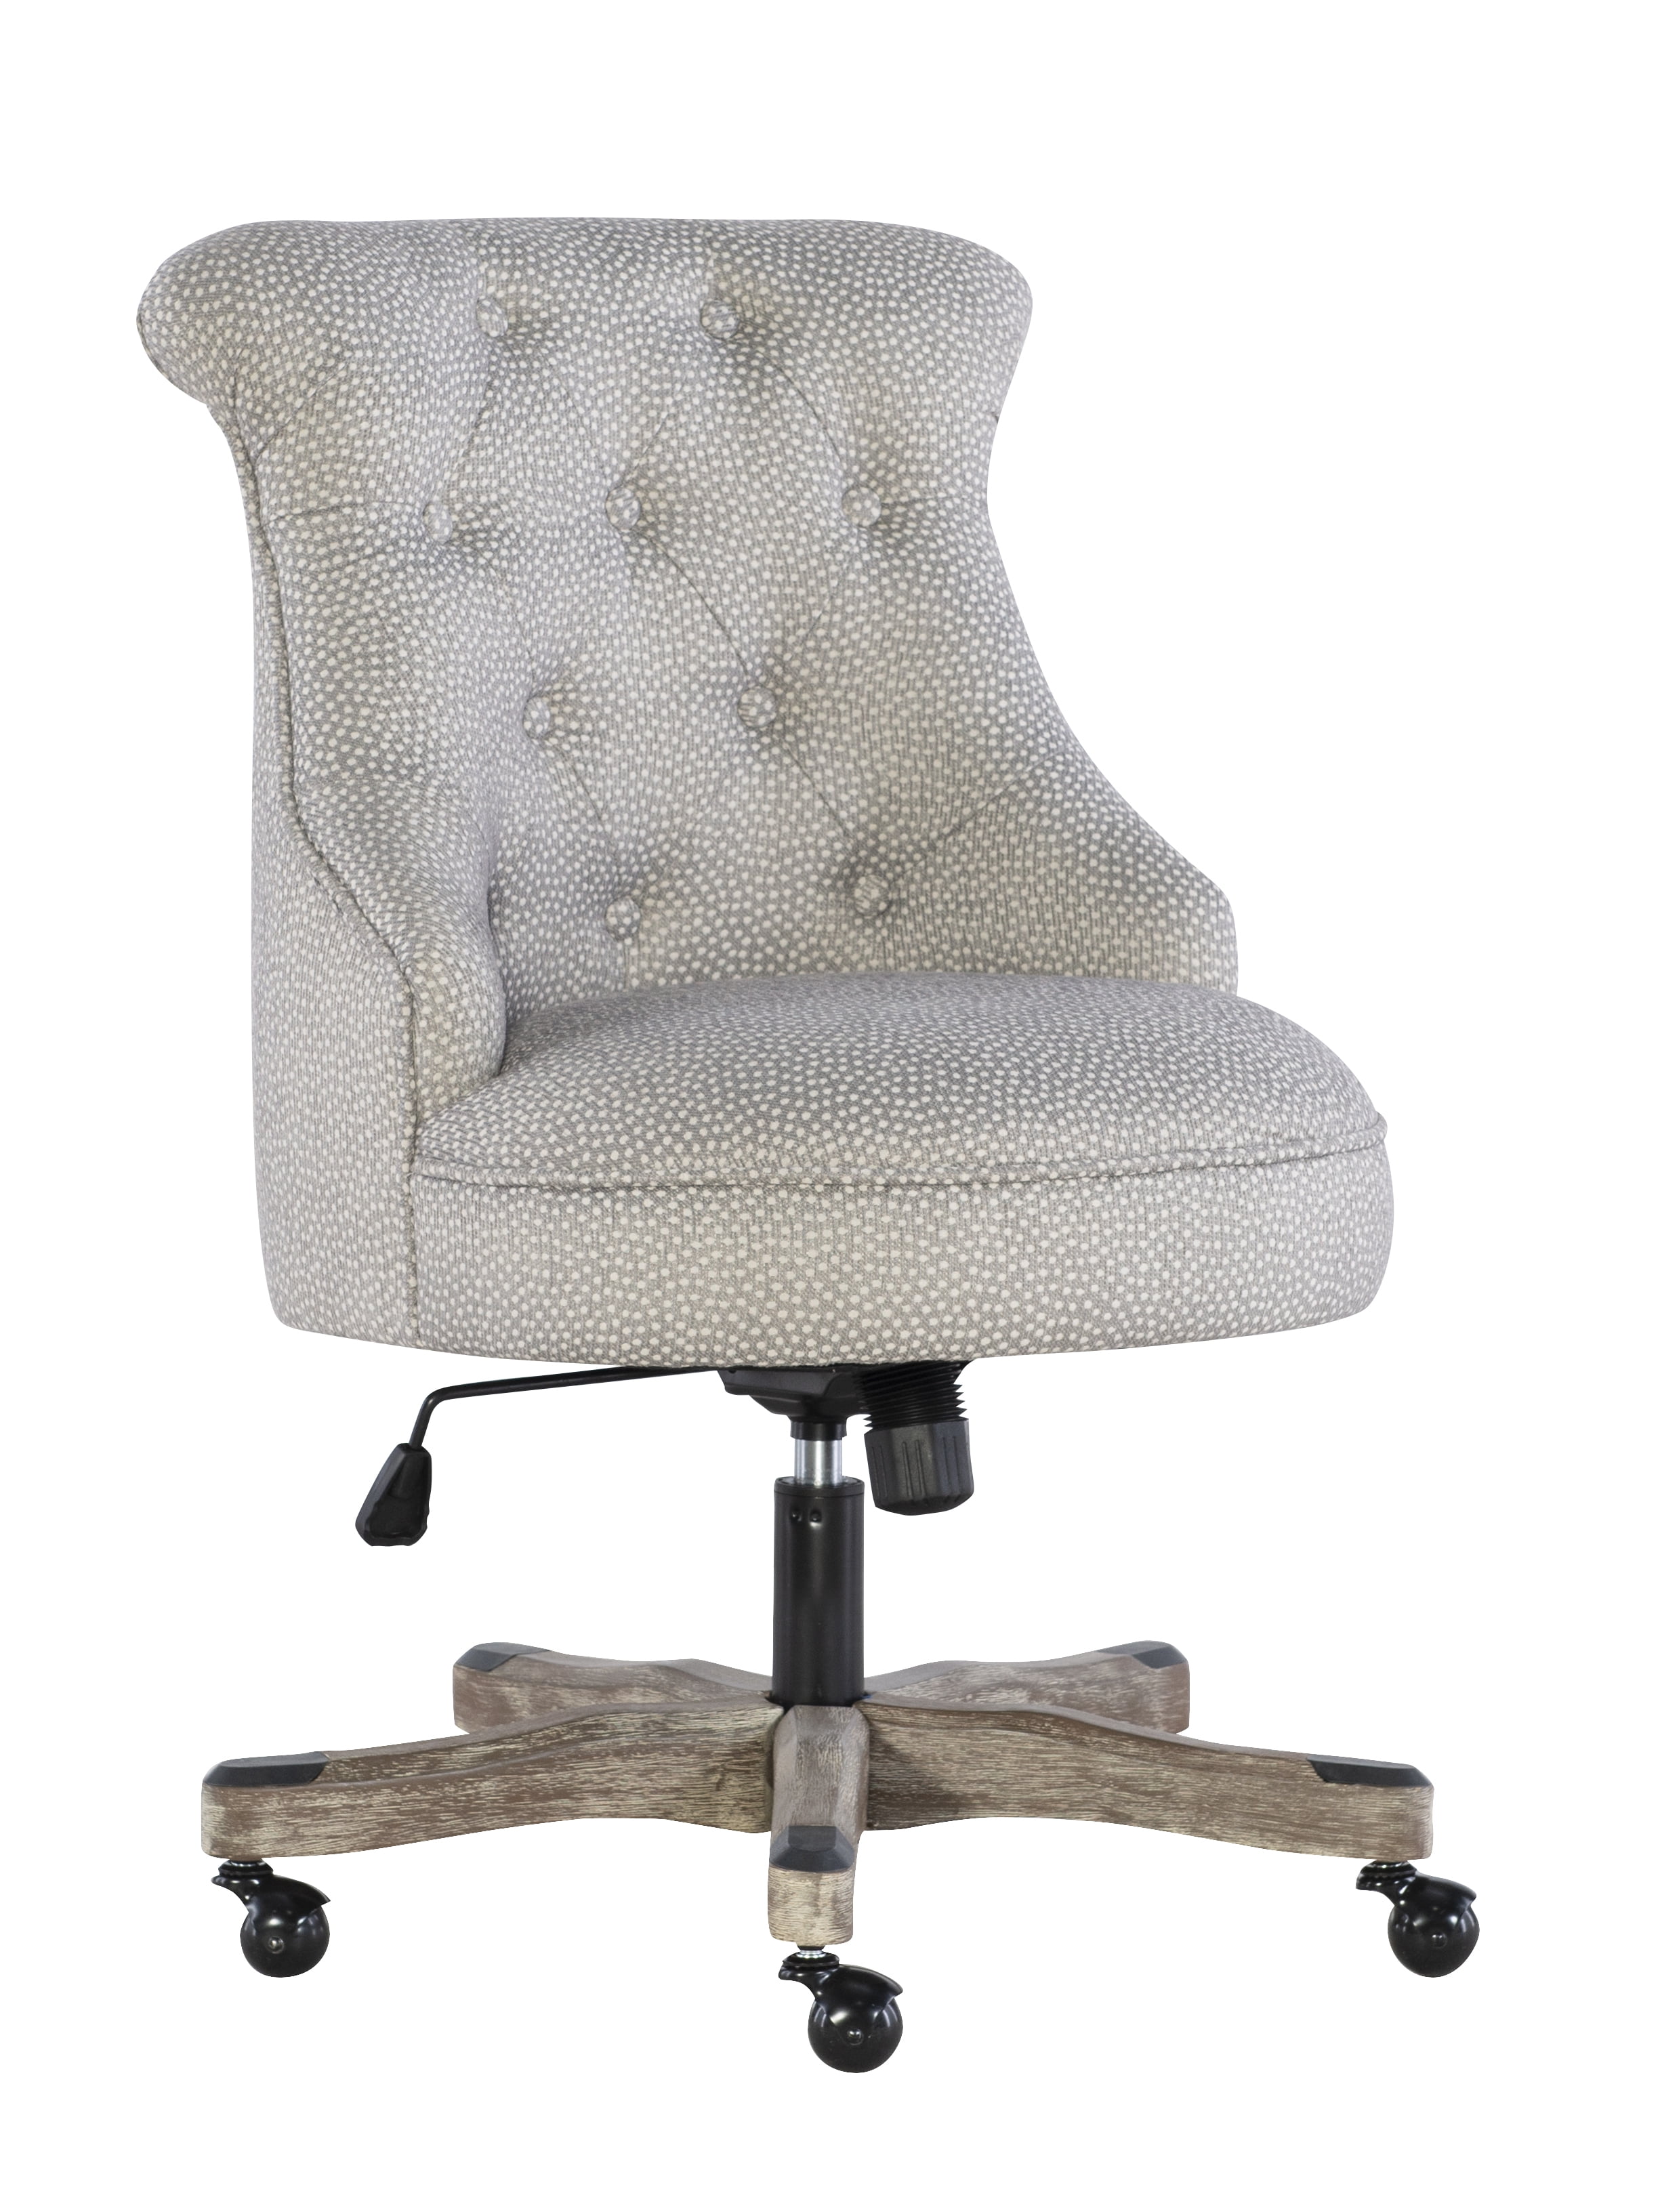 Linon Sinclair Office Chair